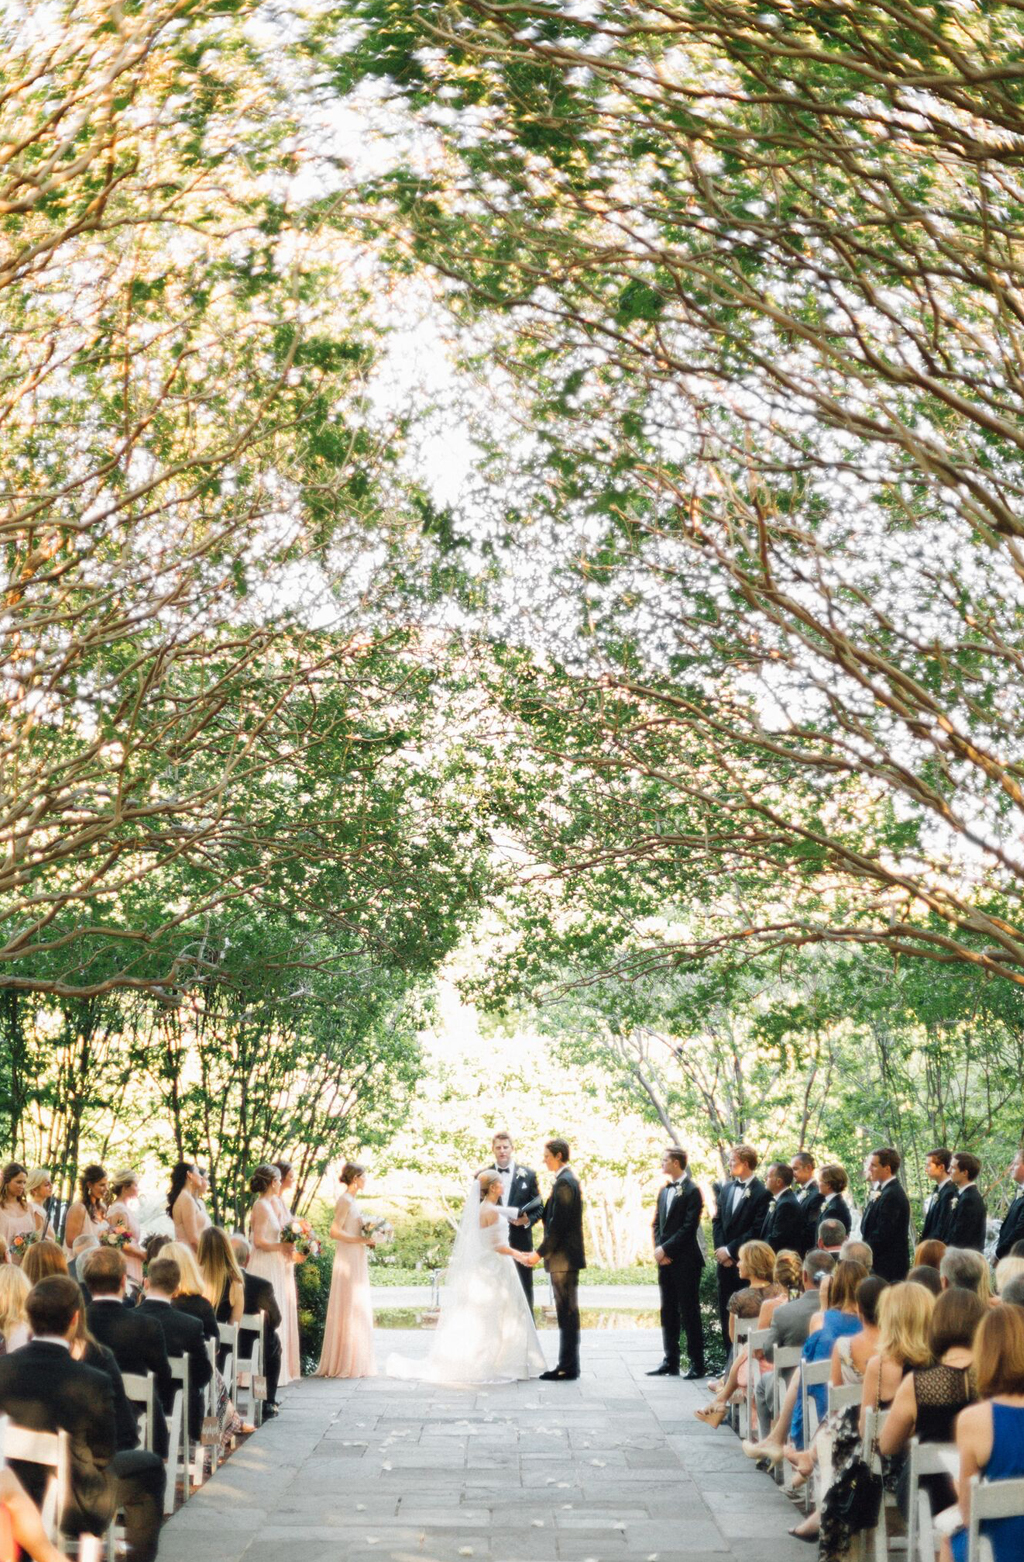 Wedding Ceremony at Dallas Arboretum Crape Myrtle Allee